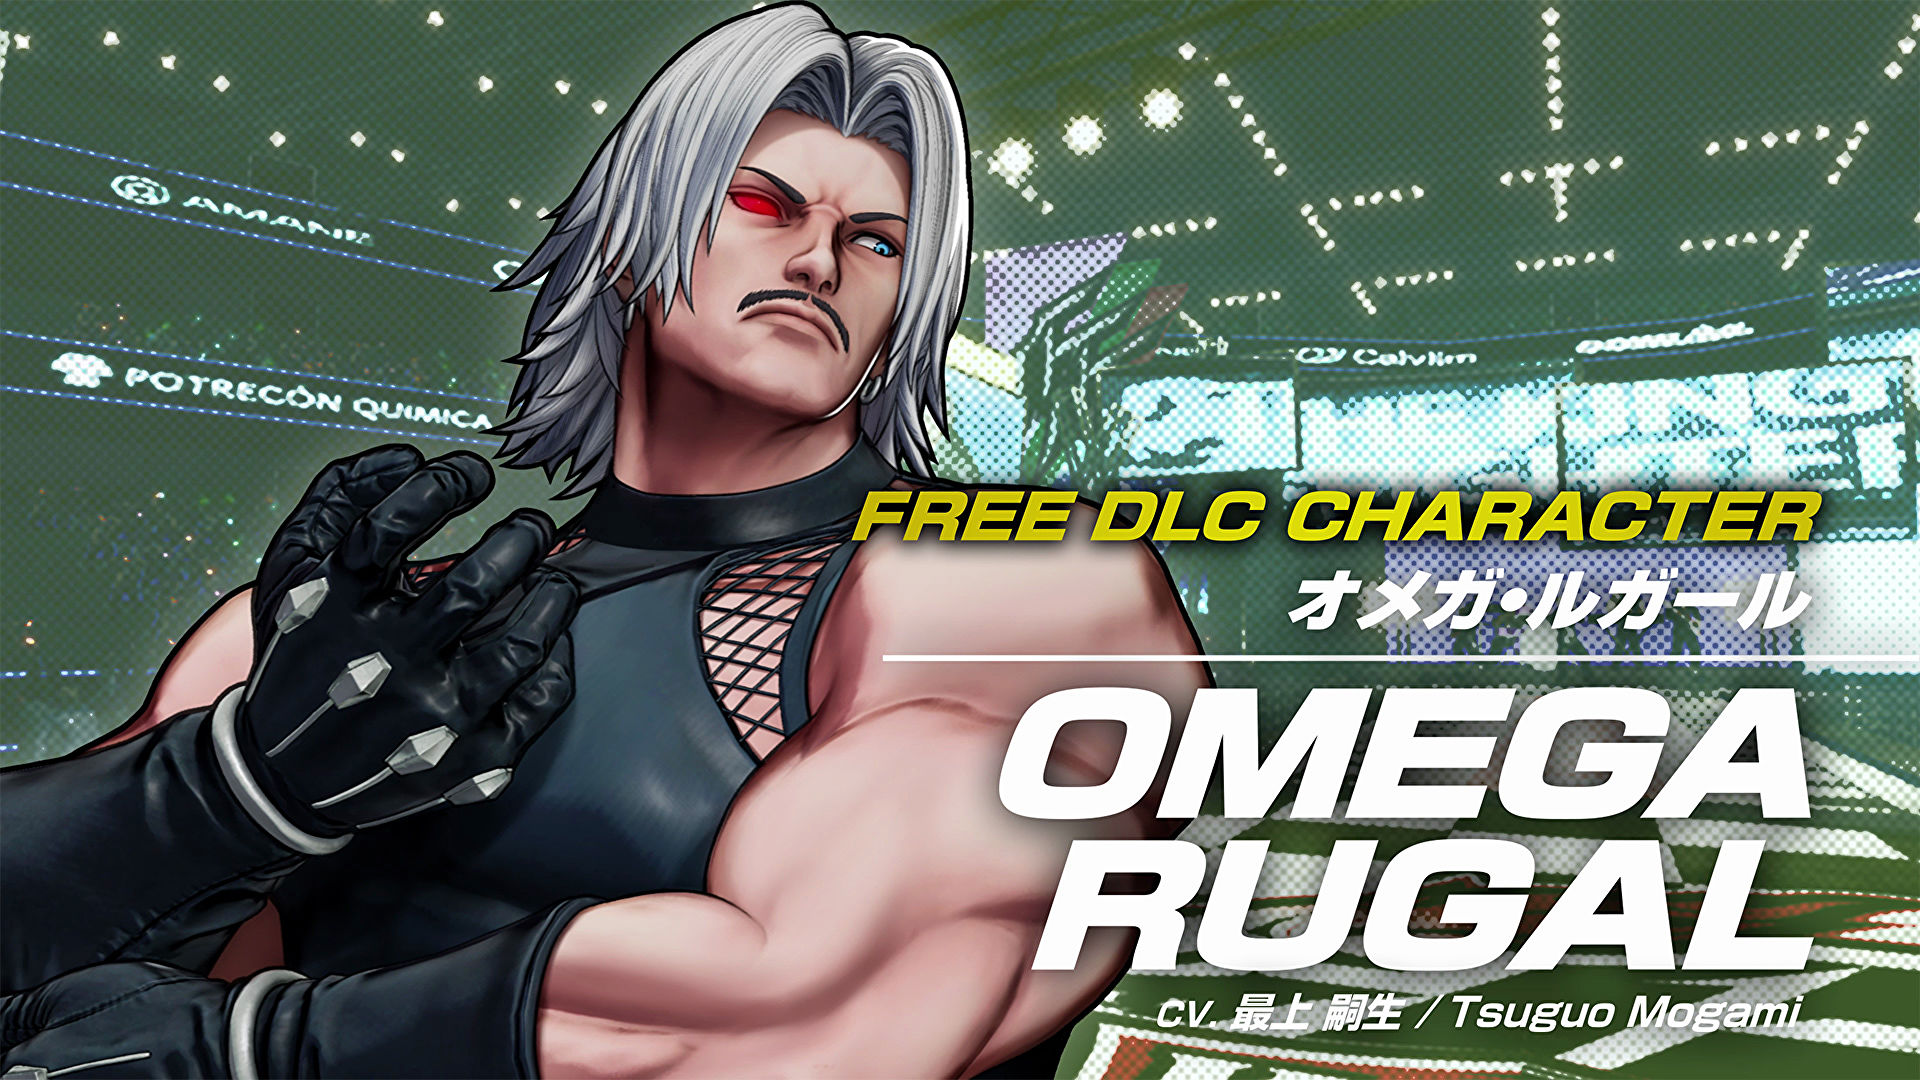 《拳皇15》新DLC免費角色“歐米茄盧卡爾”即將上線